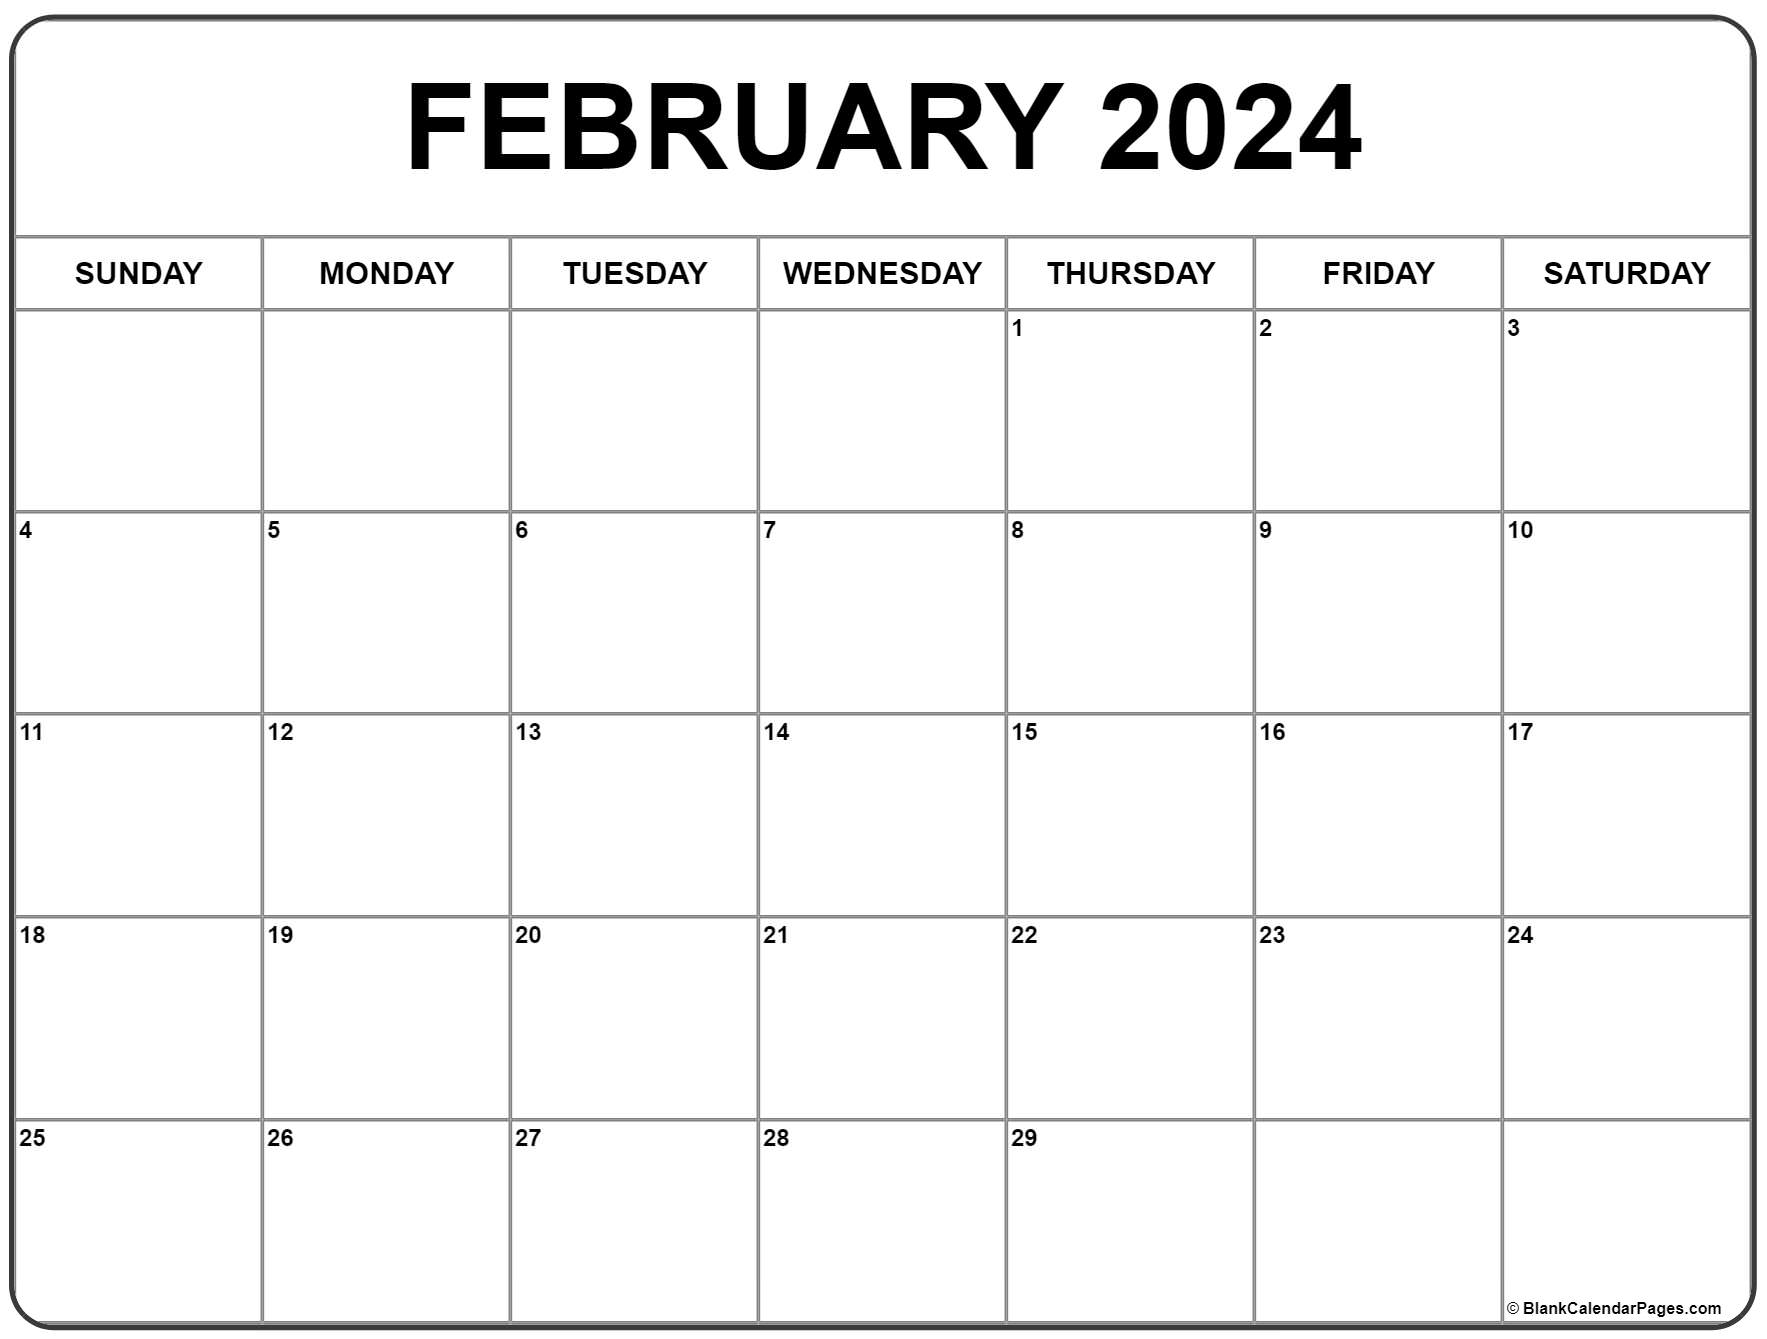 February 2024 Calendar | Free Printable Calendar for Free February Printable Calendar 2024